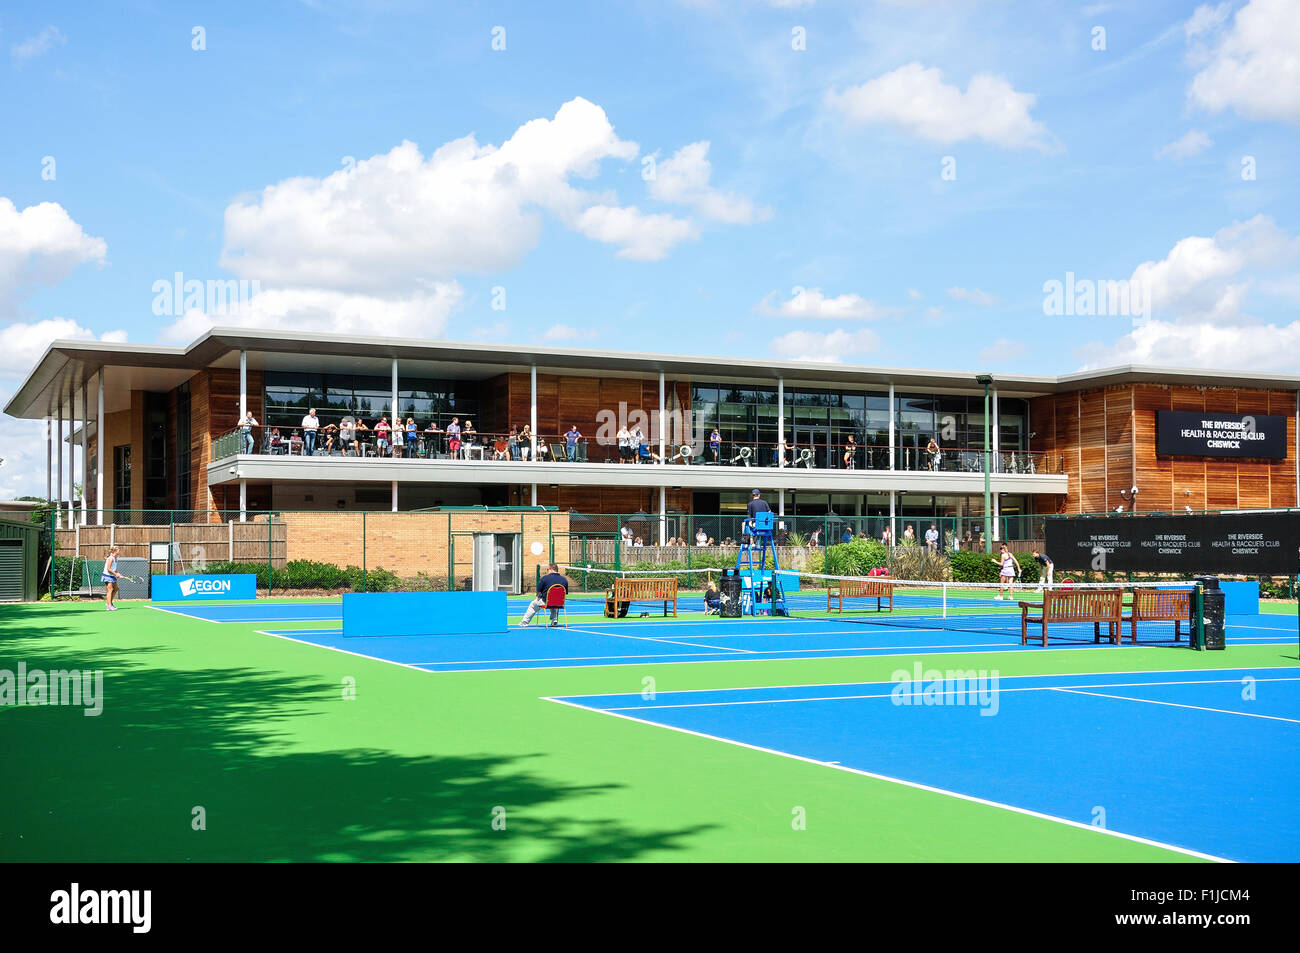 Courts de tennis au Riverside Health & raquettes Club Chiswick, Arrondissement de Hounslow, Greater London, Angleterre, Royaume-Uni Banque D'Images